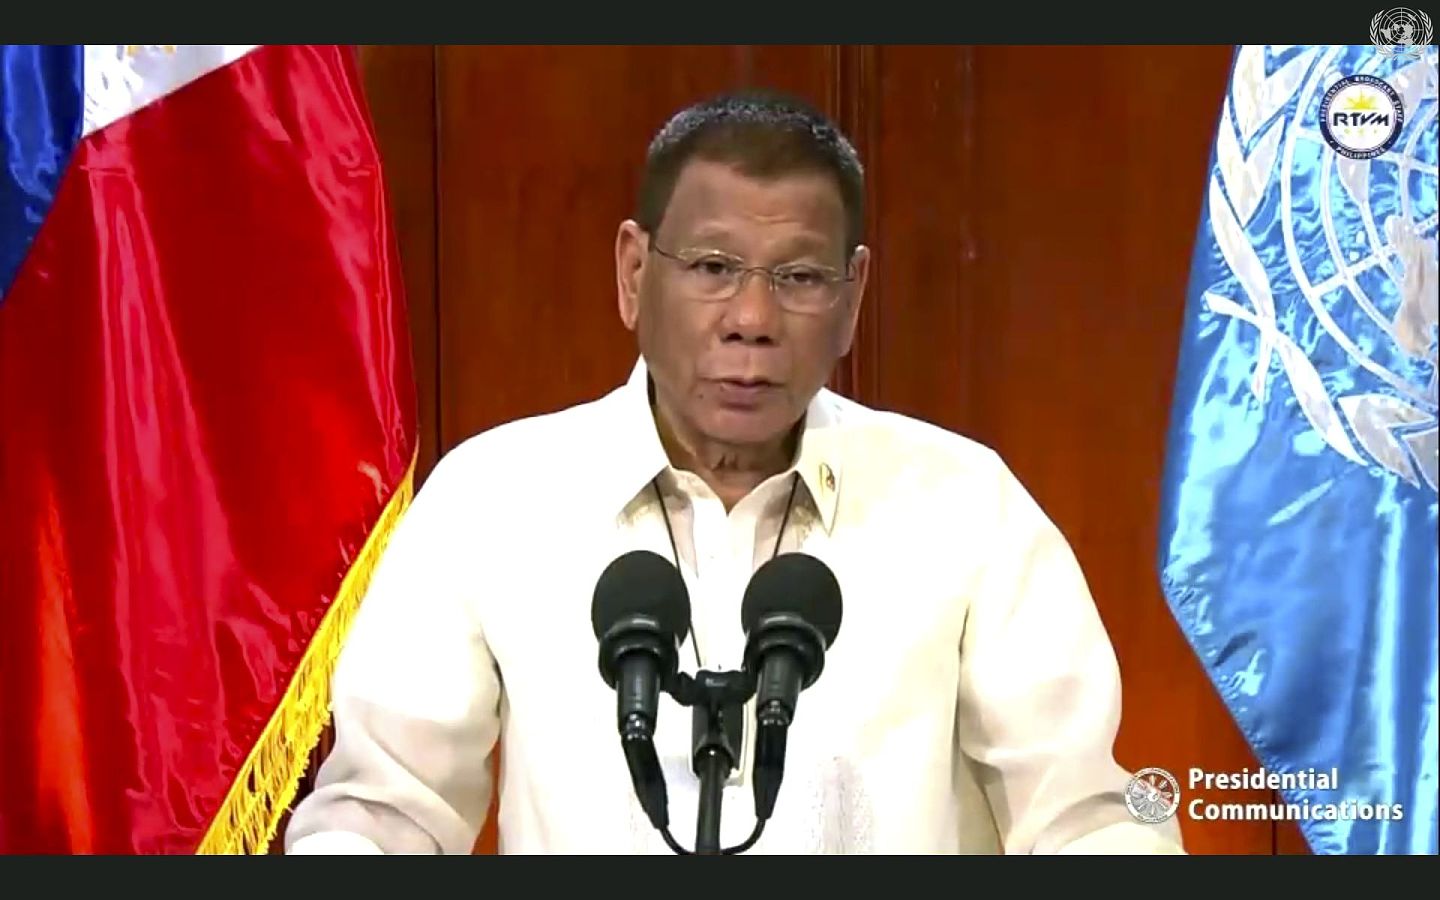 2020年9月22日，在联合国总部举行的第75届联合国大会上，菲律宾总统杜特尔特发表视频讲话。 在讲话中，他强调坚决反对任何削弱国际仲裁法庭（PCA）于2016年做出有关南海问题的裁决的企图。 (AP)